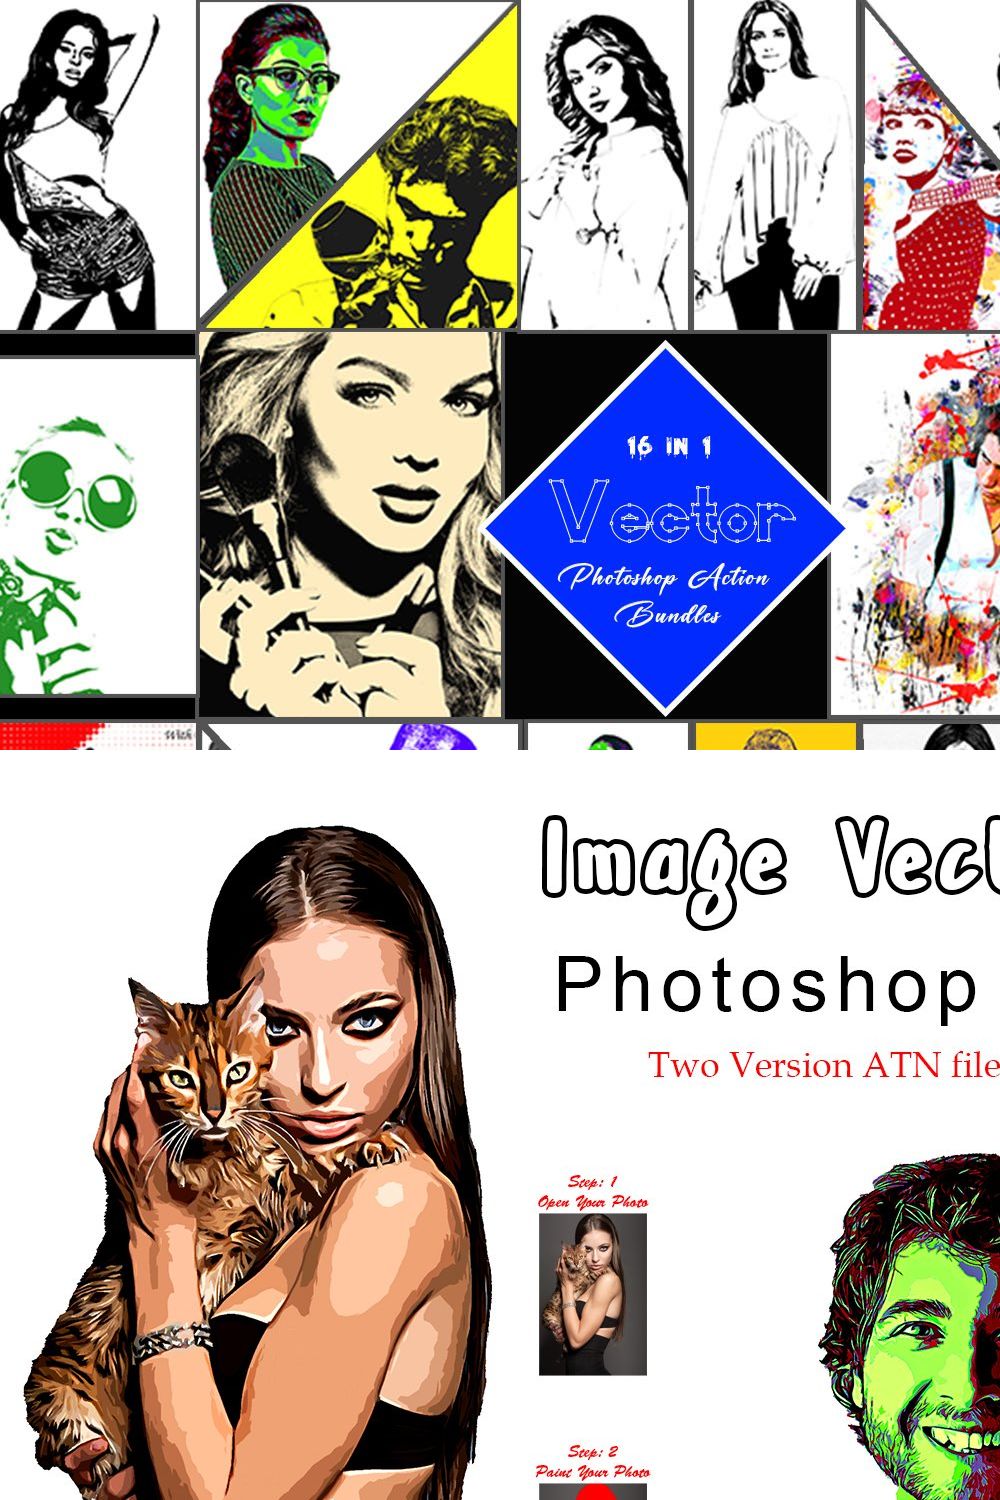 Vector Photoshop Action Bundle pinterest preview image.